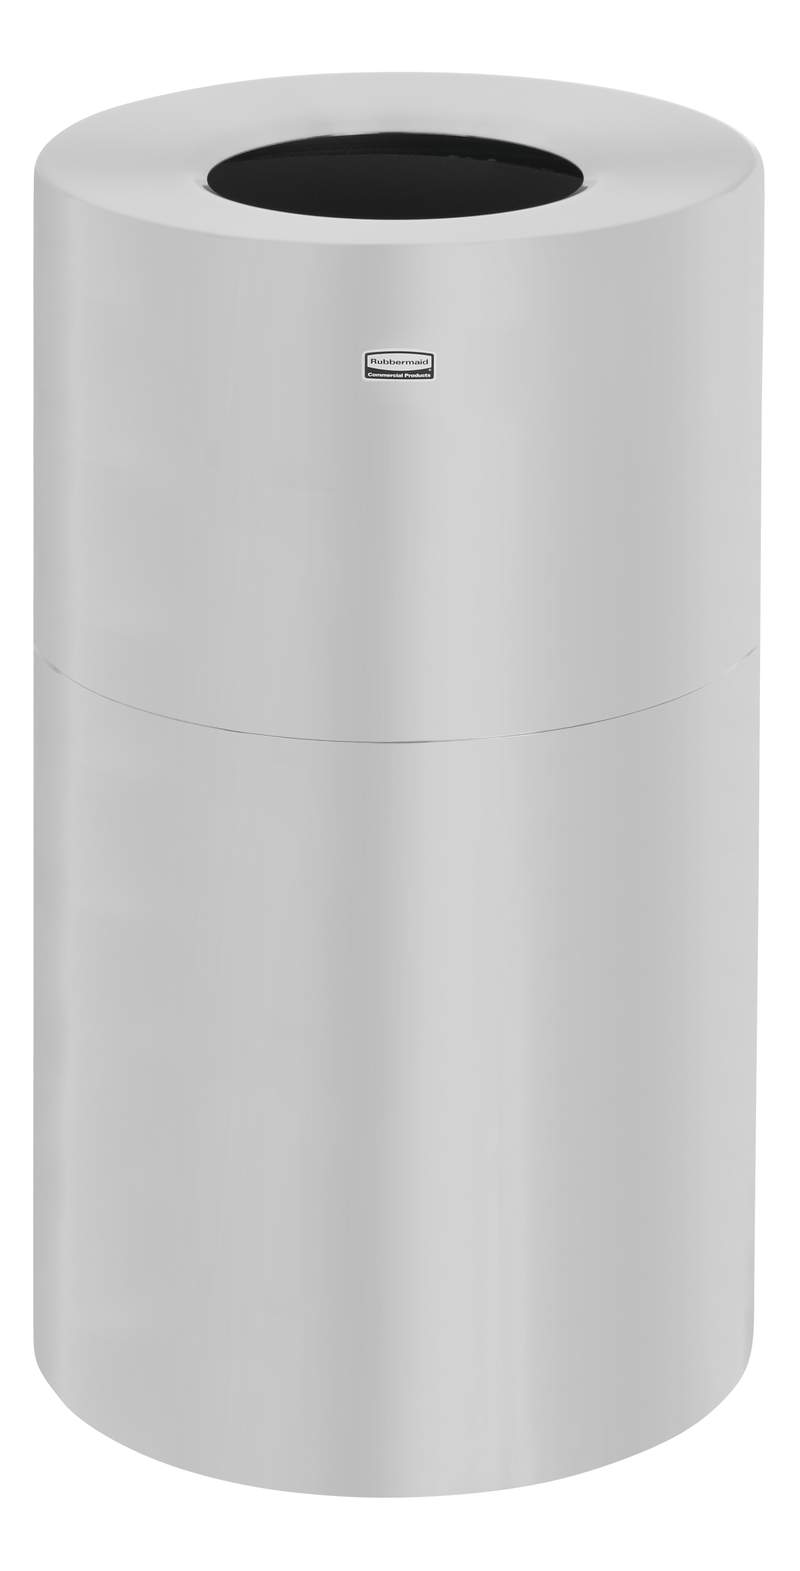 Rubbermaid Atrium-Behälter, offener Deckel, 132 L, satin. Aluminium